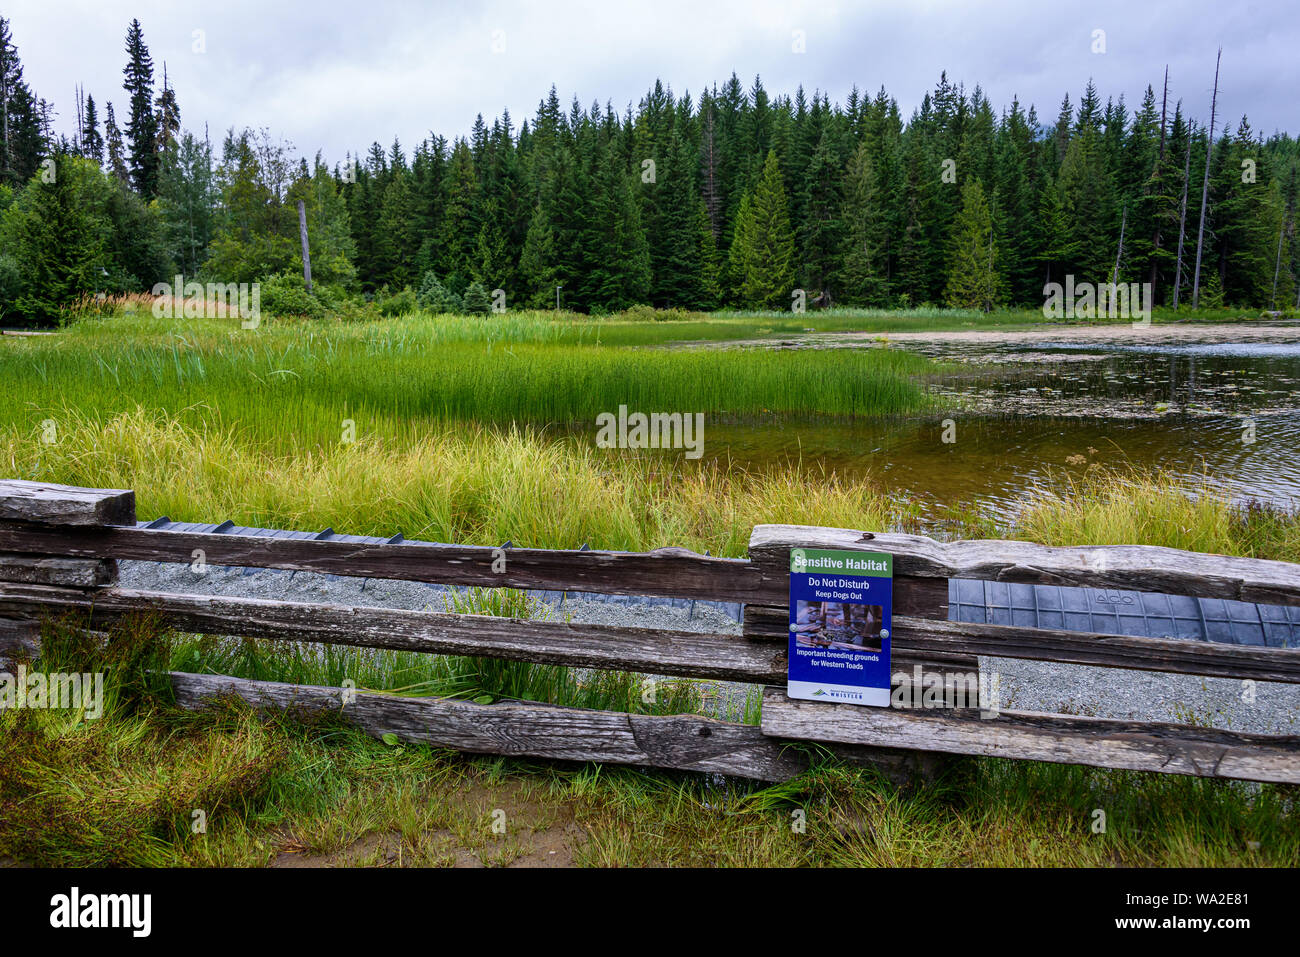 WHISTLER, BC/CANADA - Agosto 2, 2019: habitat sensibili segno sulla rampa di split recinto sul lago perduto park beach. Lago perduto il paesaggio con le barriere di protezione Foto Stock